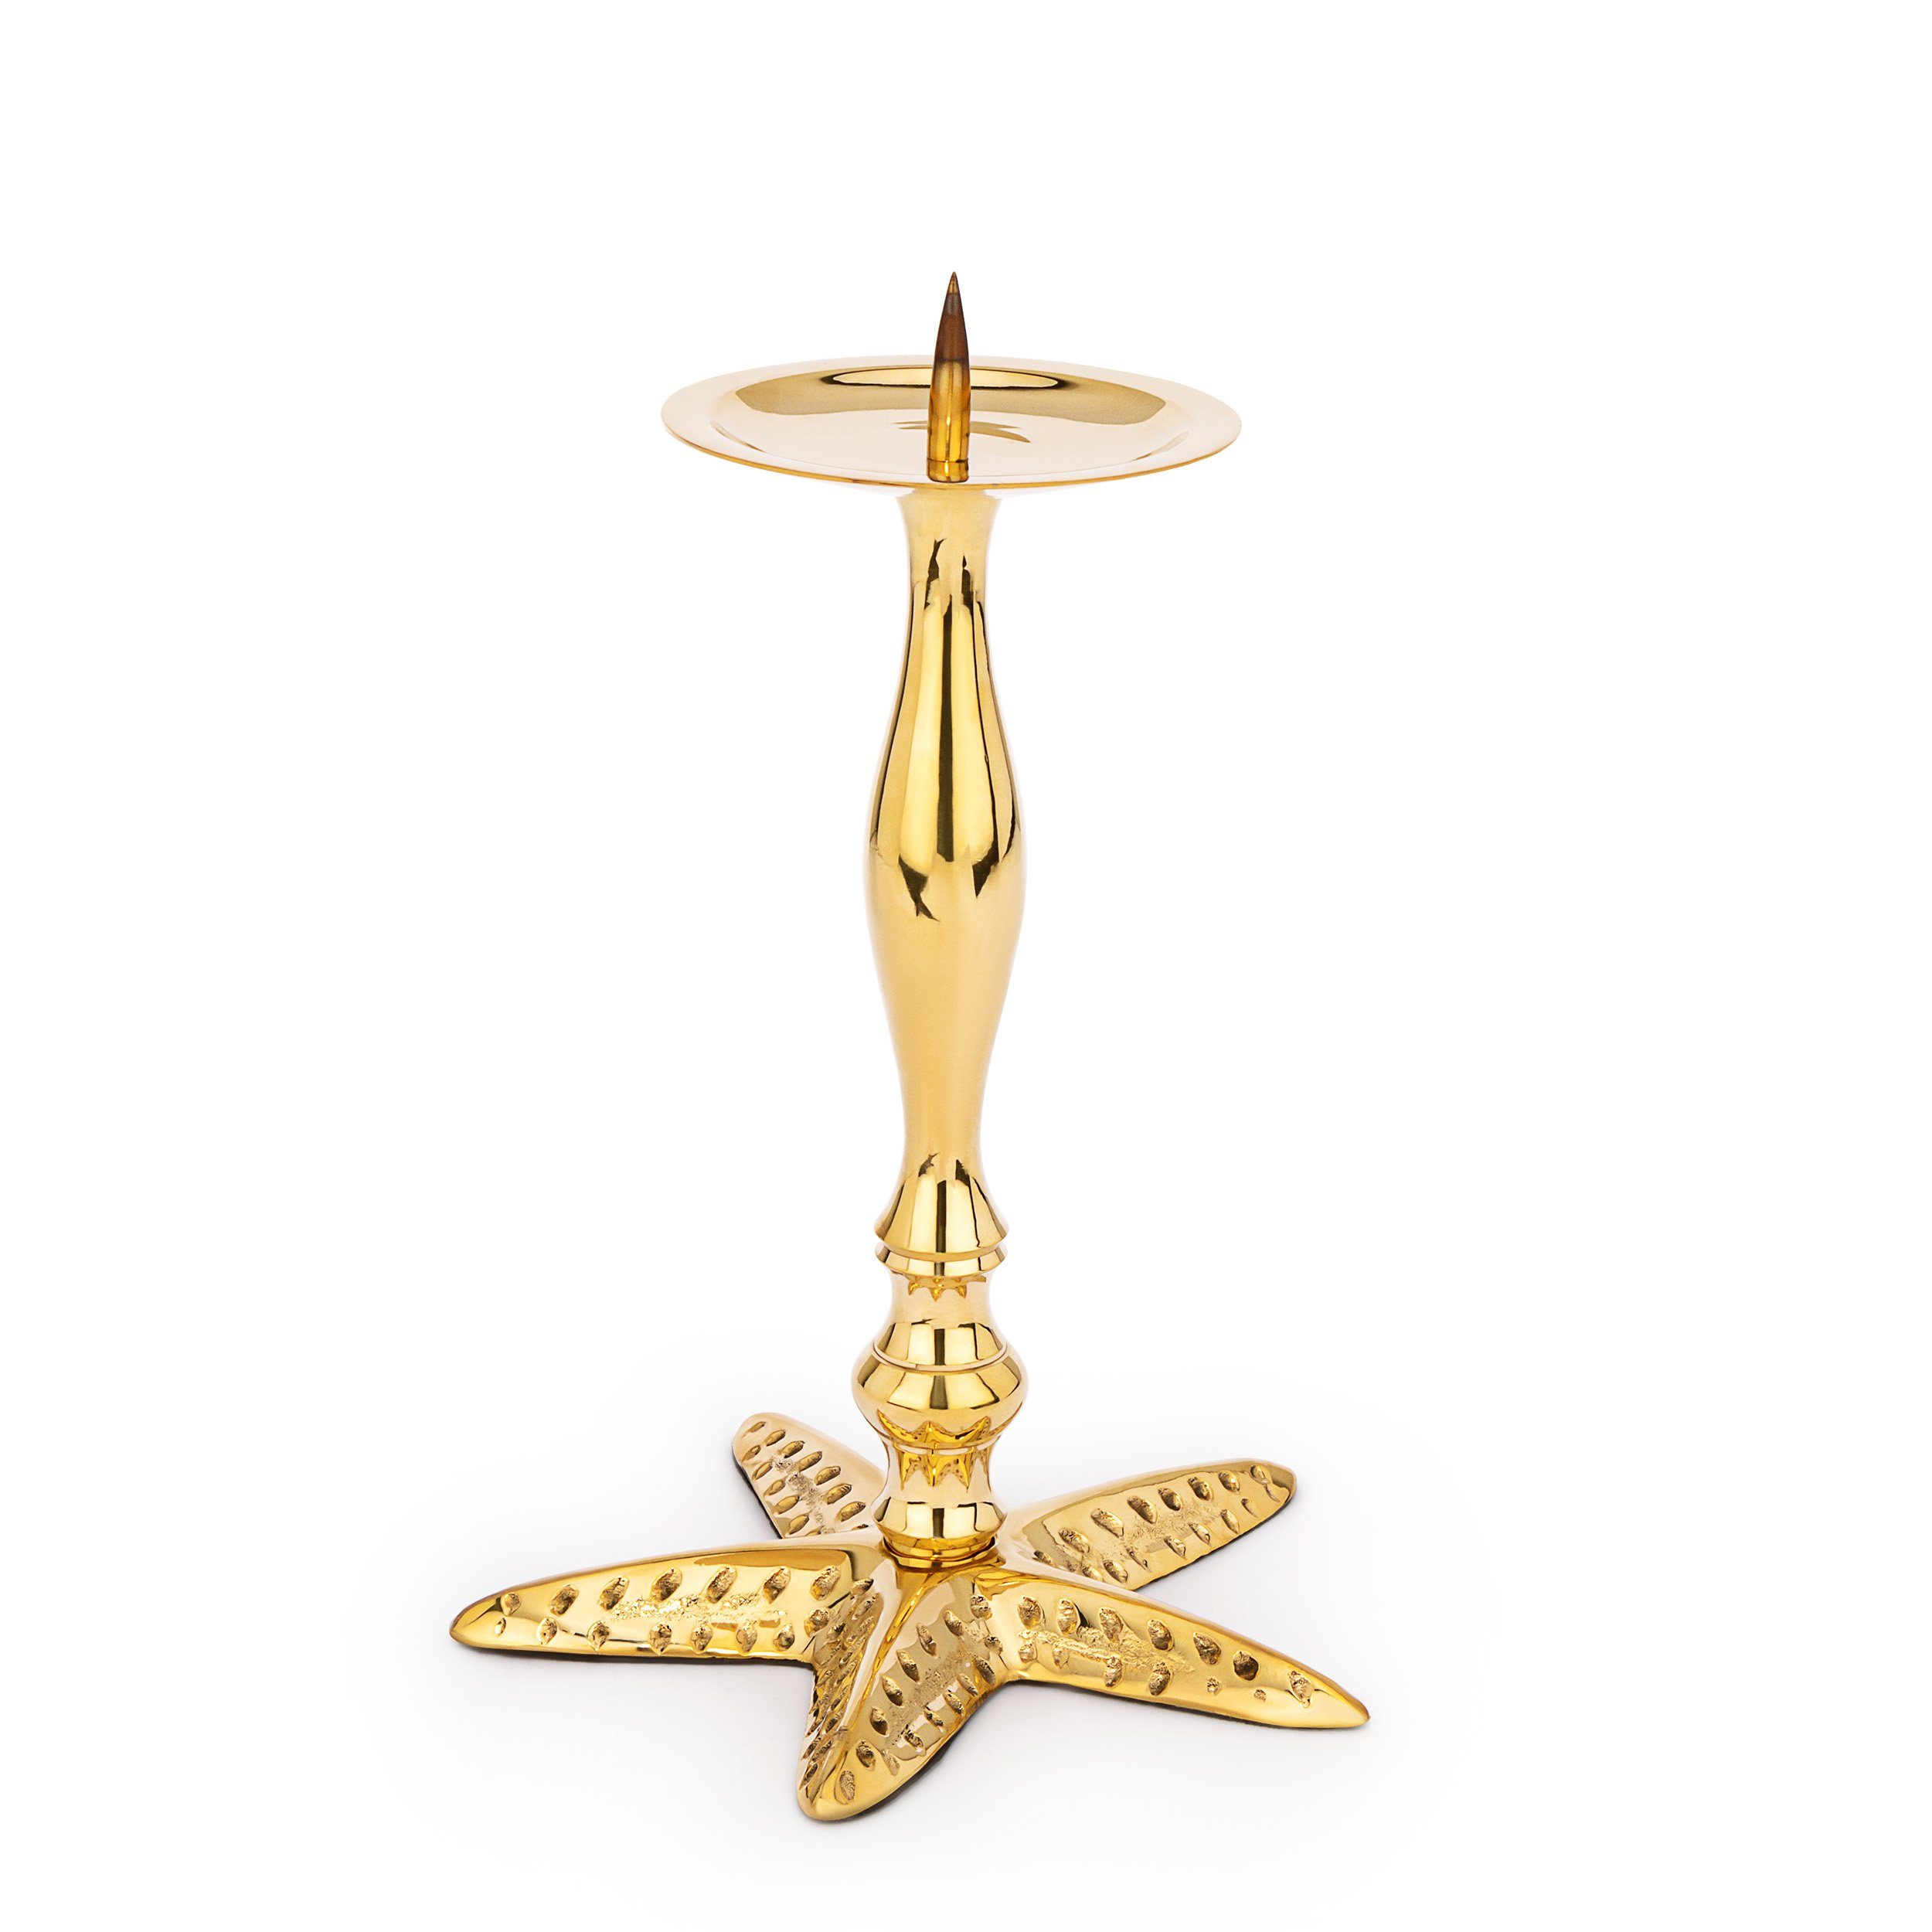 Kerz aus Maritim (Kerzenhalter) Moderne hoch 23cm NKlaus Seestern gold Messing Kerzenständer Kerzenhalter